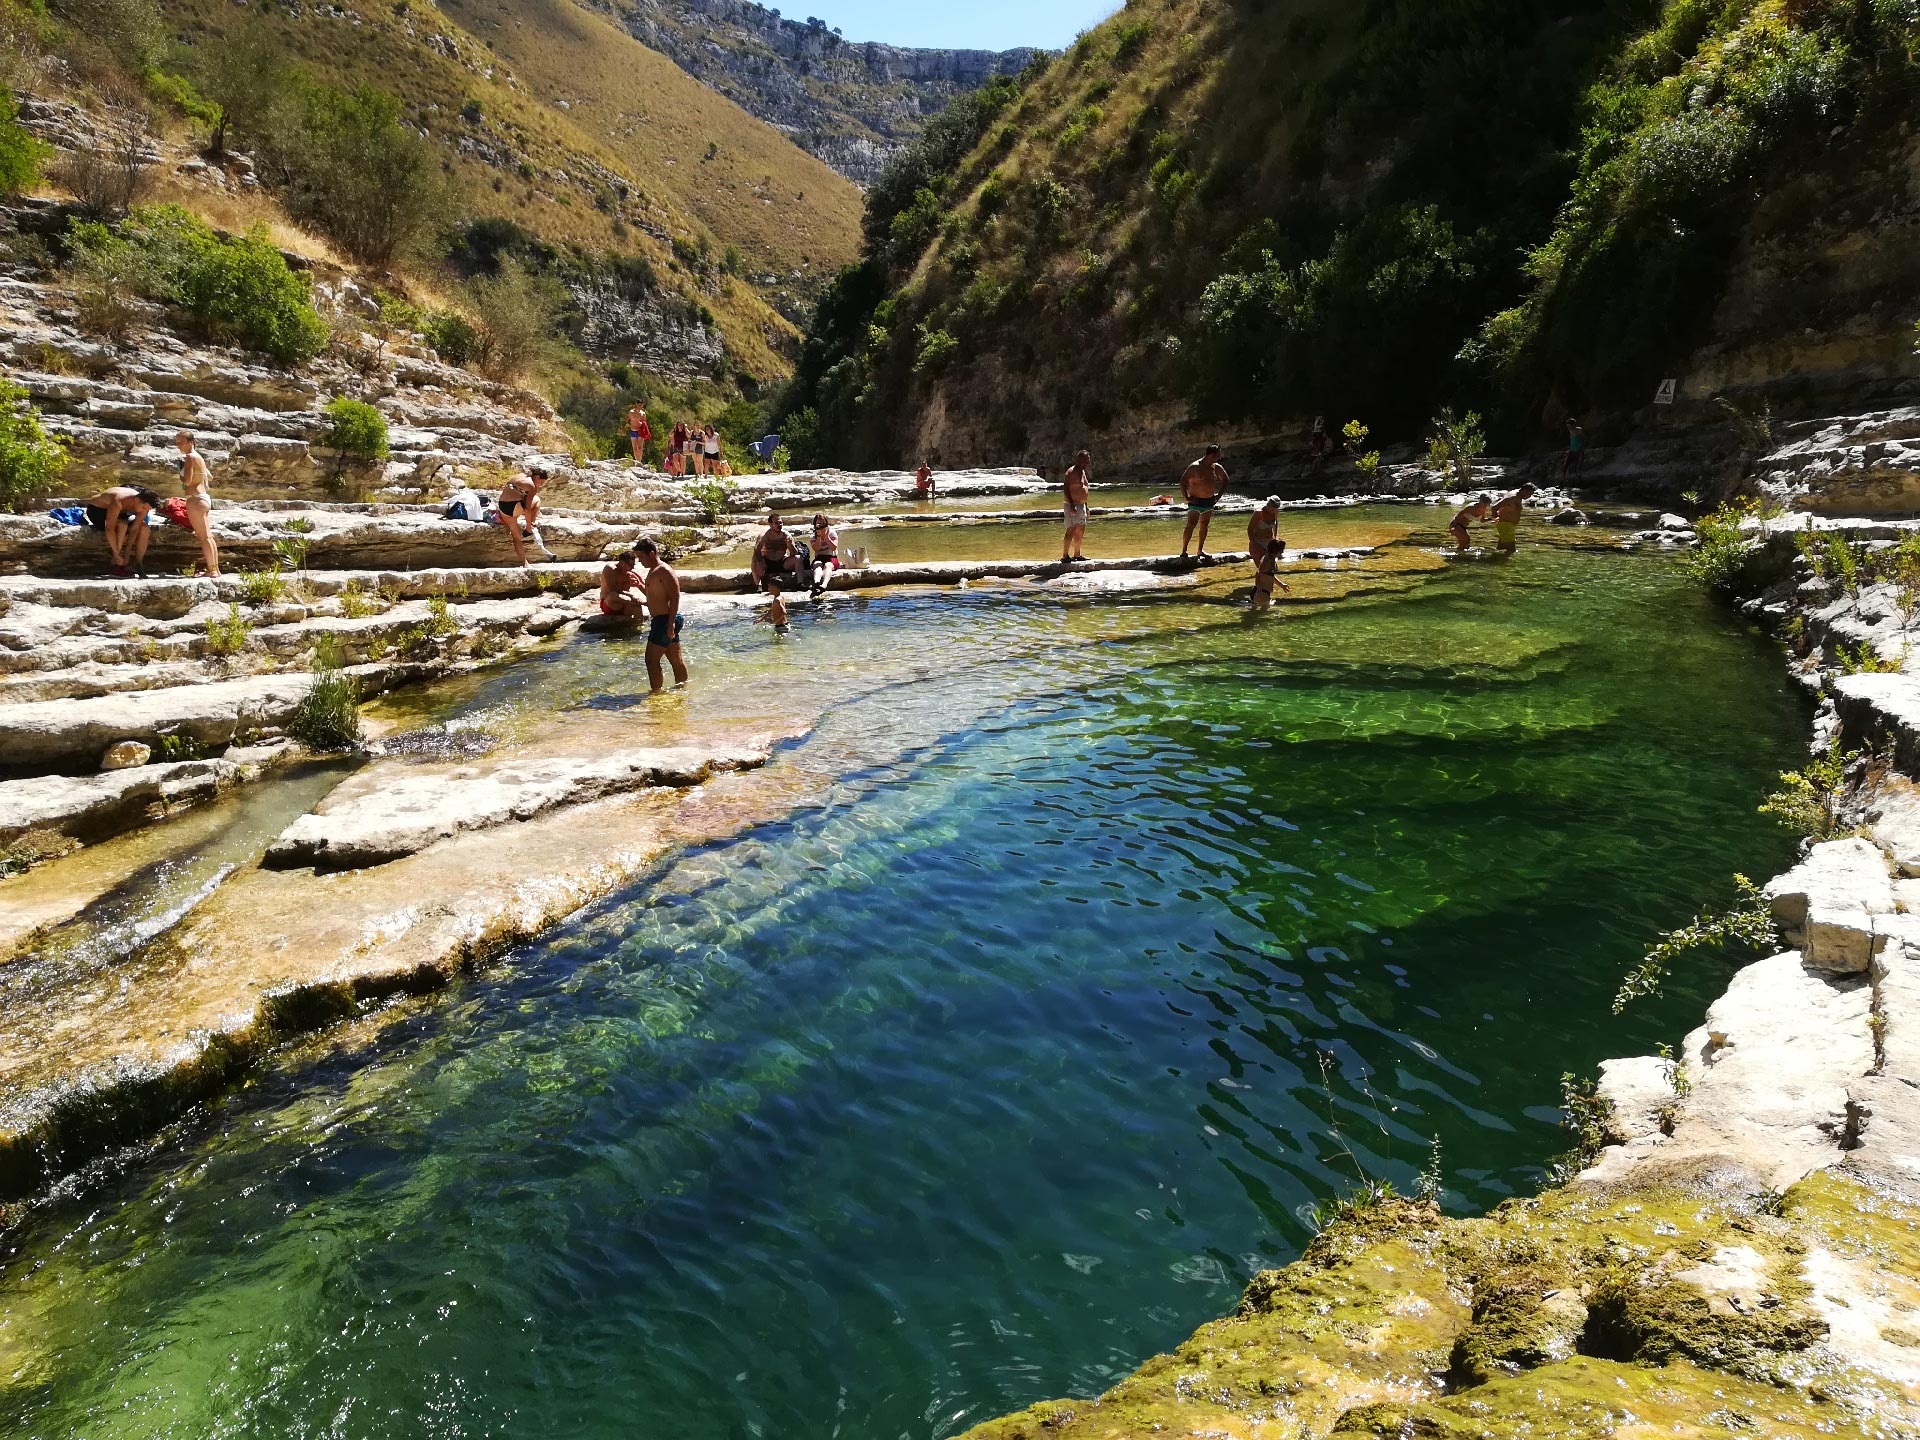 scorcio di un laghetto color verde smeraldo all'interno della Riserva naturale di Cavagrande del Cassibile, Siracusa, Sicilia